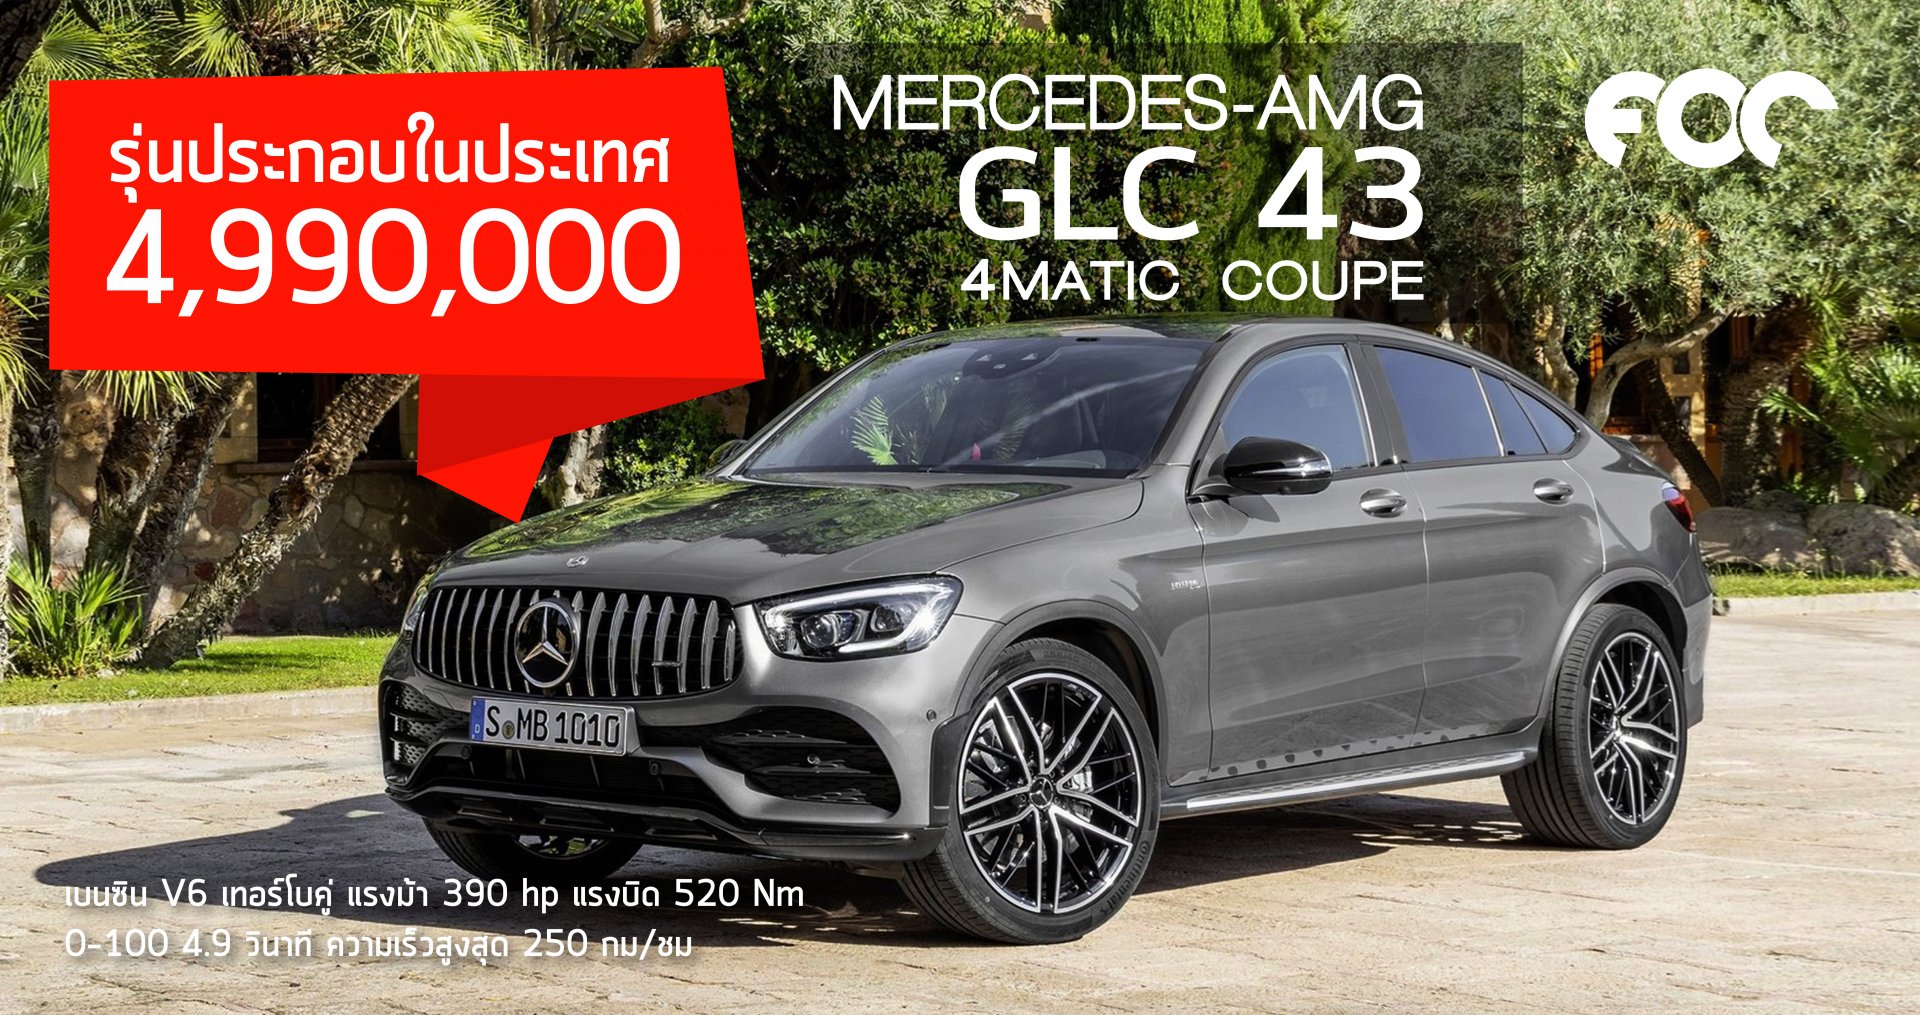 รถยนต์ SUV Coupe ตัวแรง Mercedes-AMG GLC 43 4MATIC Coupé รุ่นประกอบในประเทศ facelift โฉมใหม่ ราคา 4,990,000 บาท